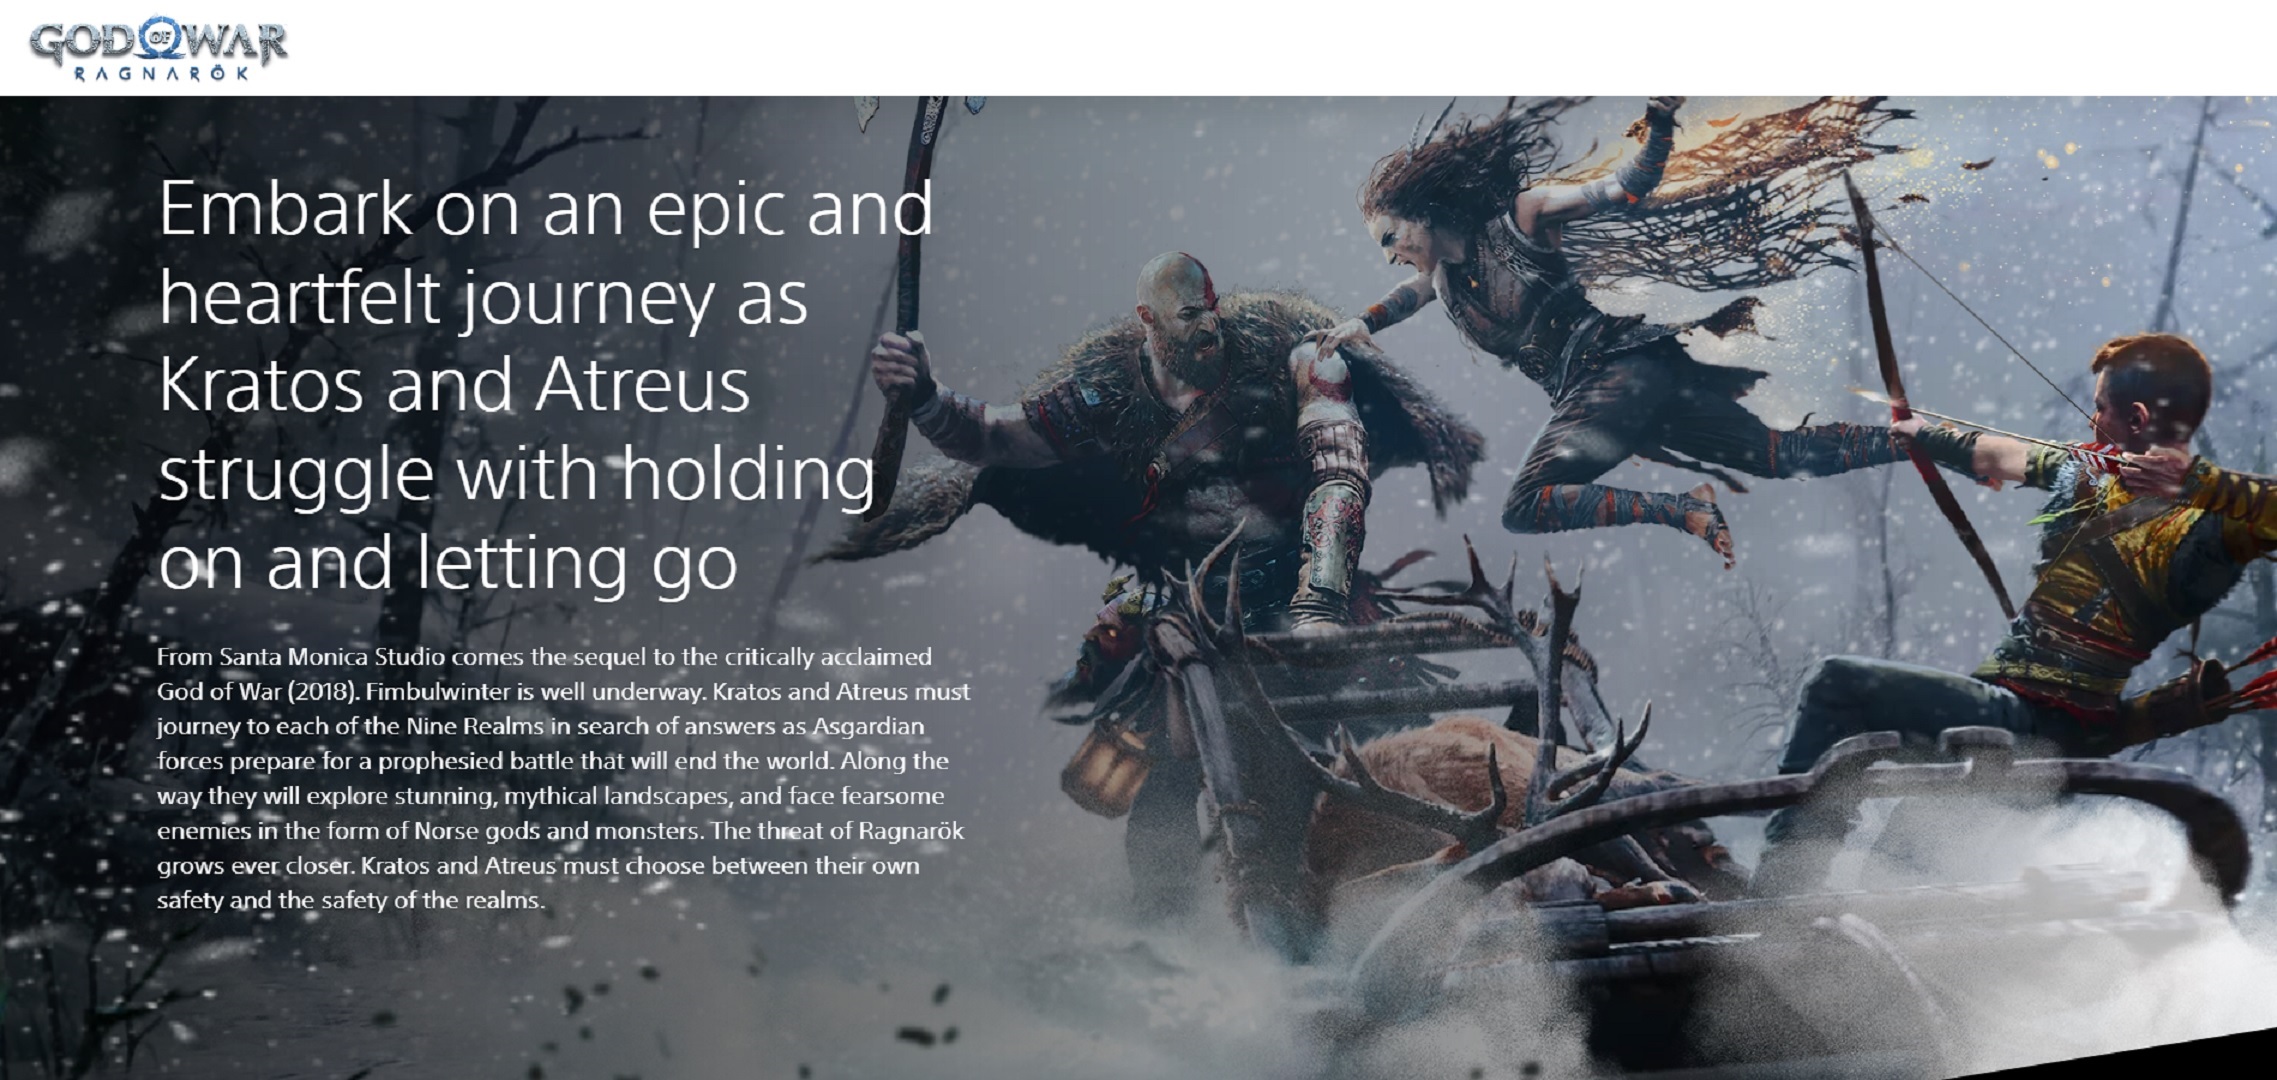 God of War on PS4, website